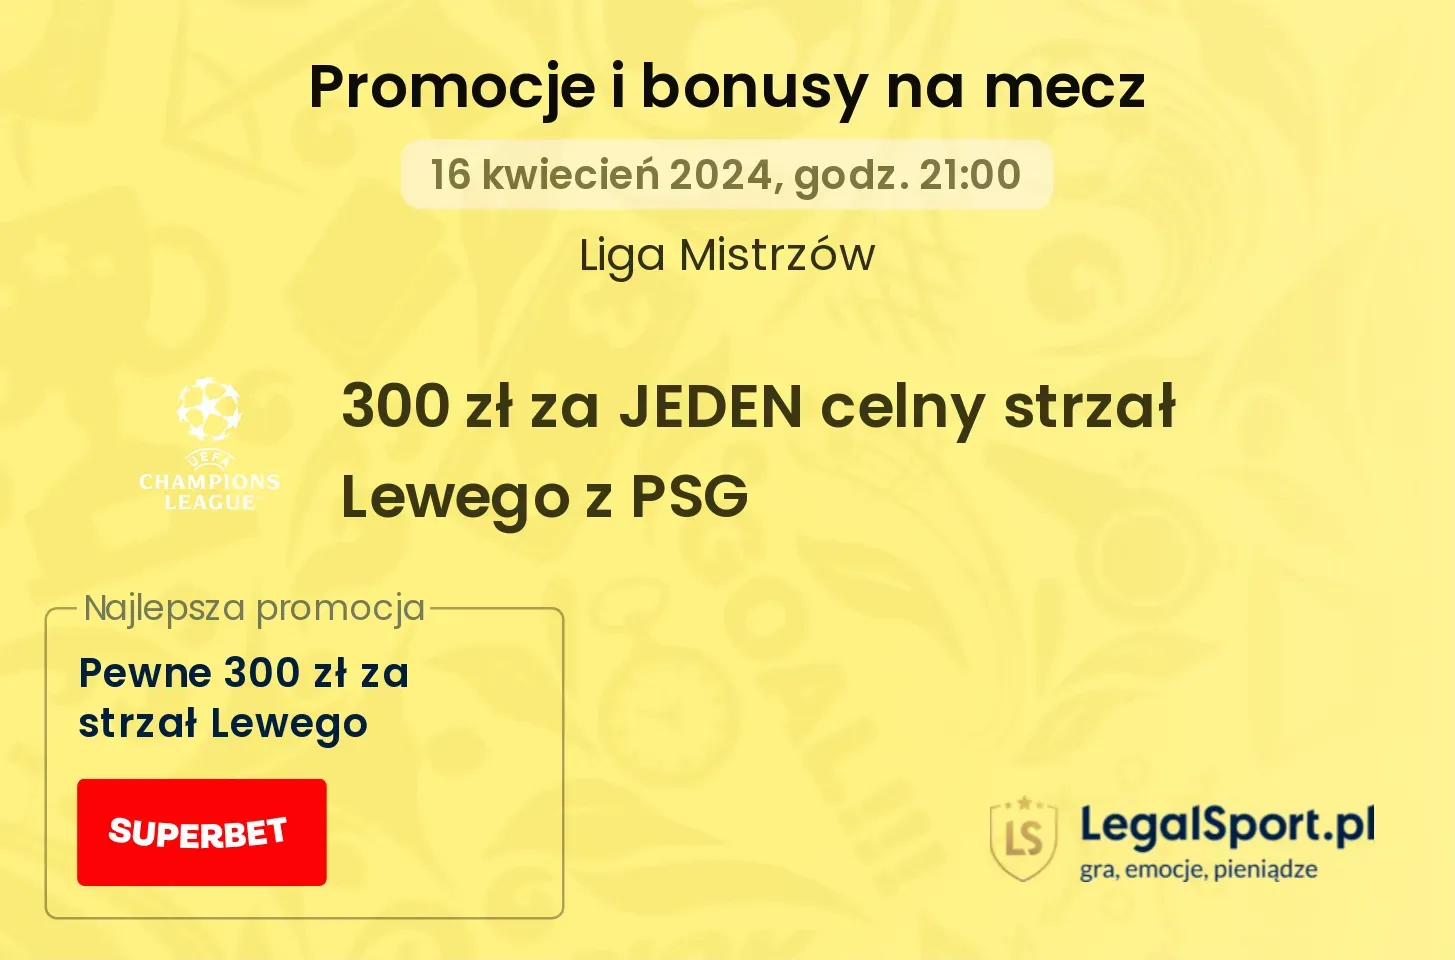 300 zł za JEDEN celny strzał Lewego z PSG promocje bonusy na mecz